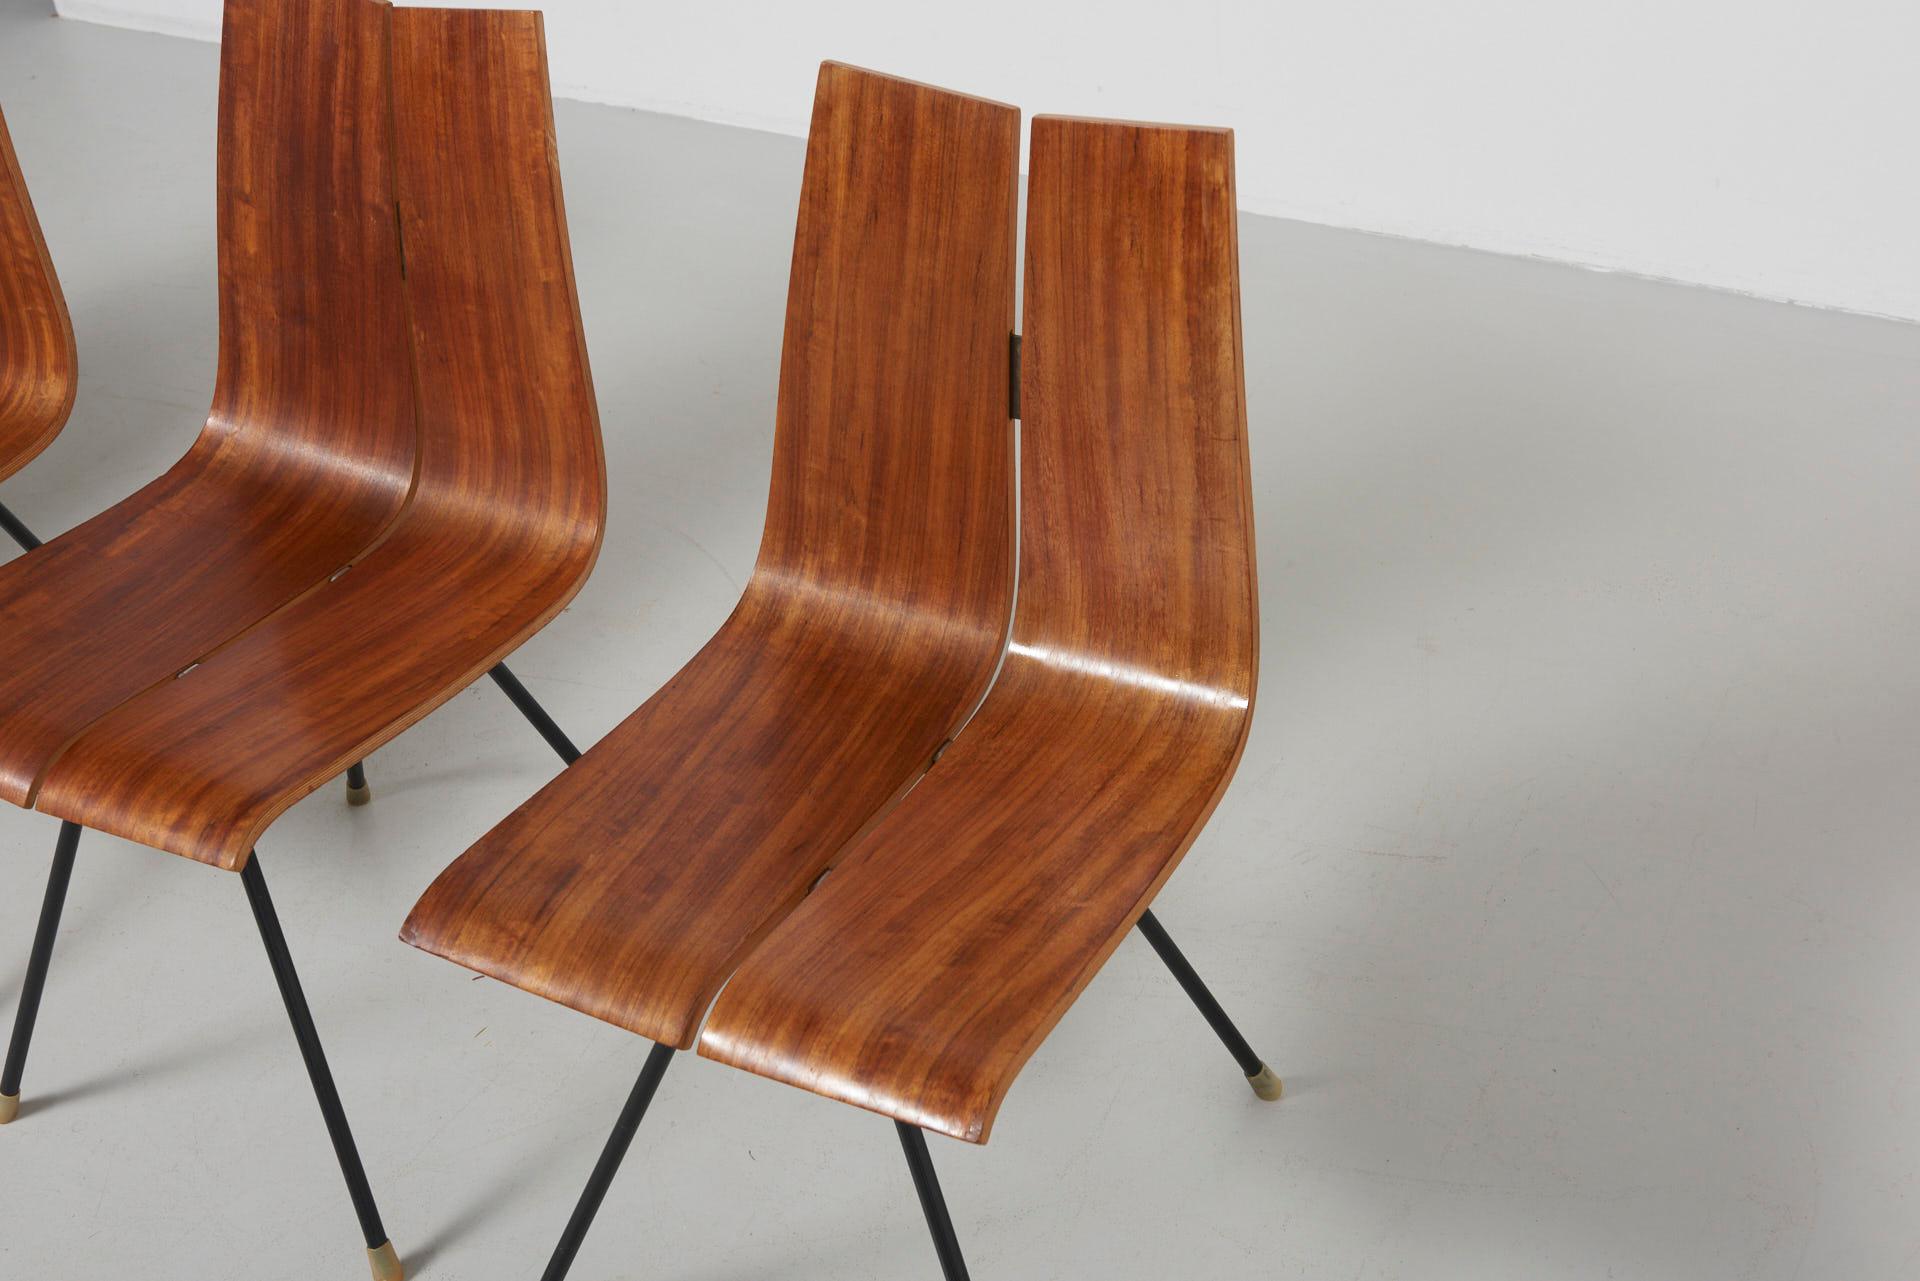 4 'GA' Chairs by Hans Bellmann in 1955, Made by Horgen Glarus in Switzerland 1